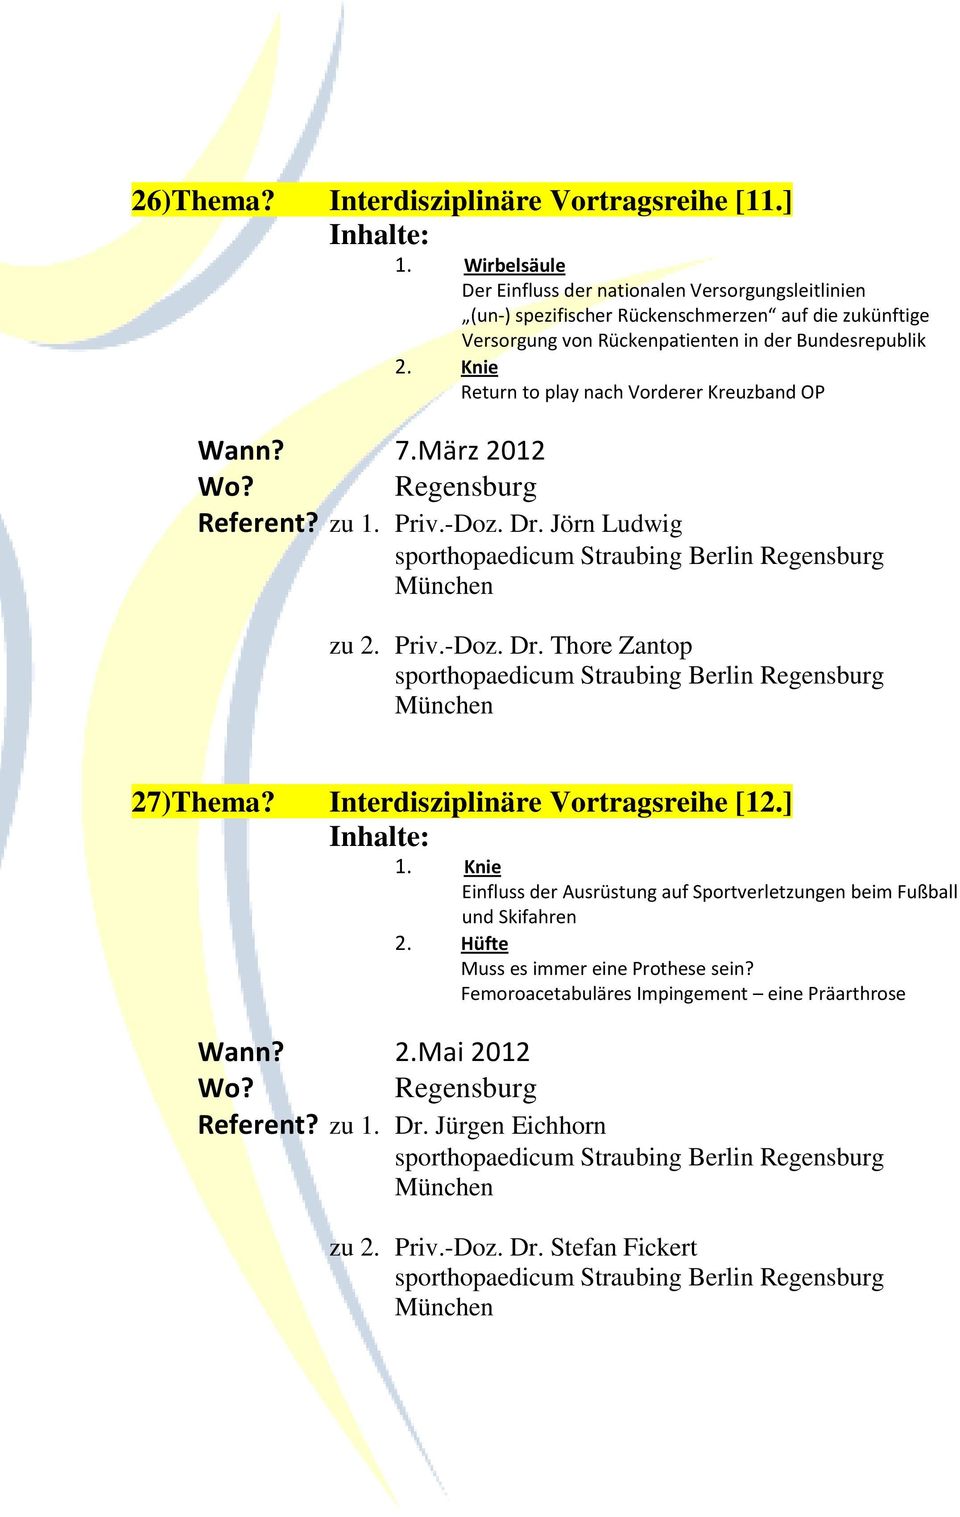 2. Knie Return to play nach Vorderer Kreuzband OP Wann? 7.März 2012 Referent? zu 1. Priv.-Doz. Dr. Jörn Ludwig zu 2. Priv.-Doz. Dr. Thore Zantop 27)Thema?